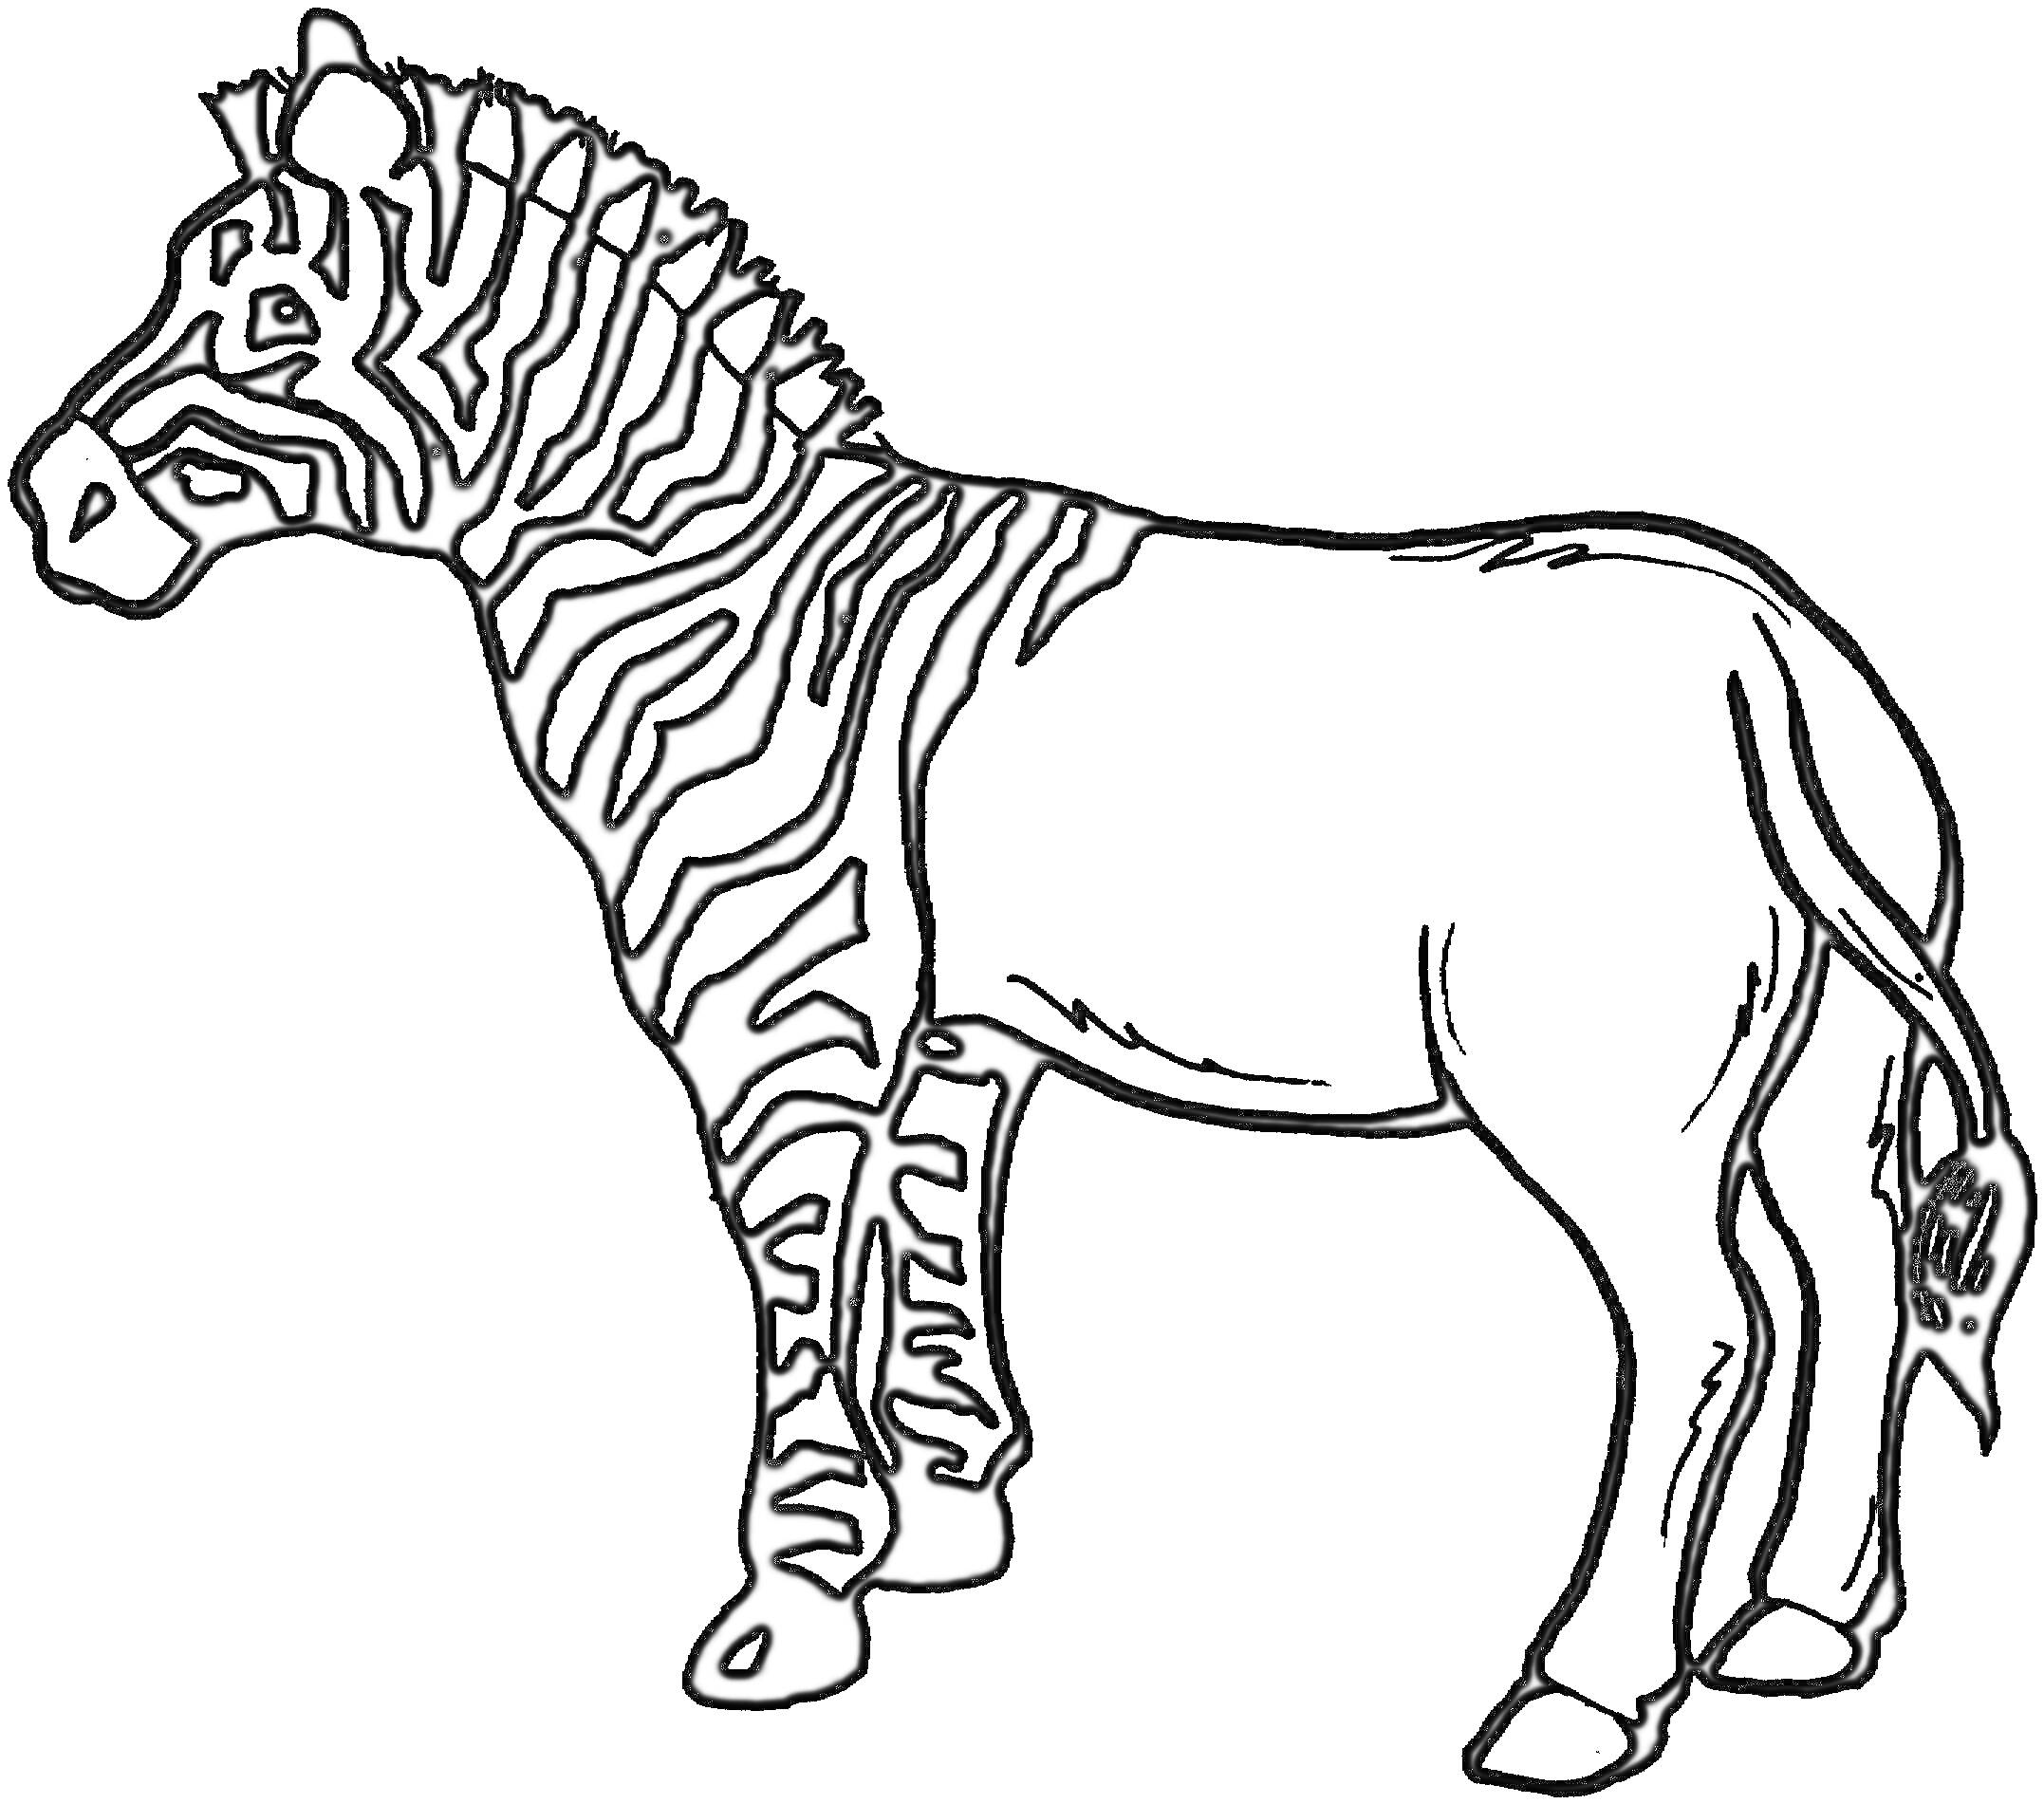 Зебра с полосками, стоящая боком, с поднятым хвостом